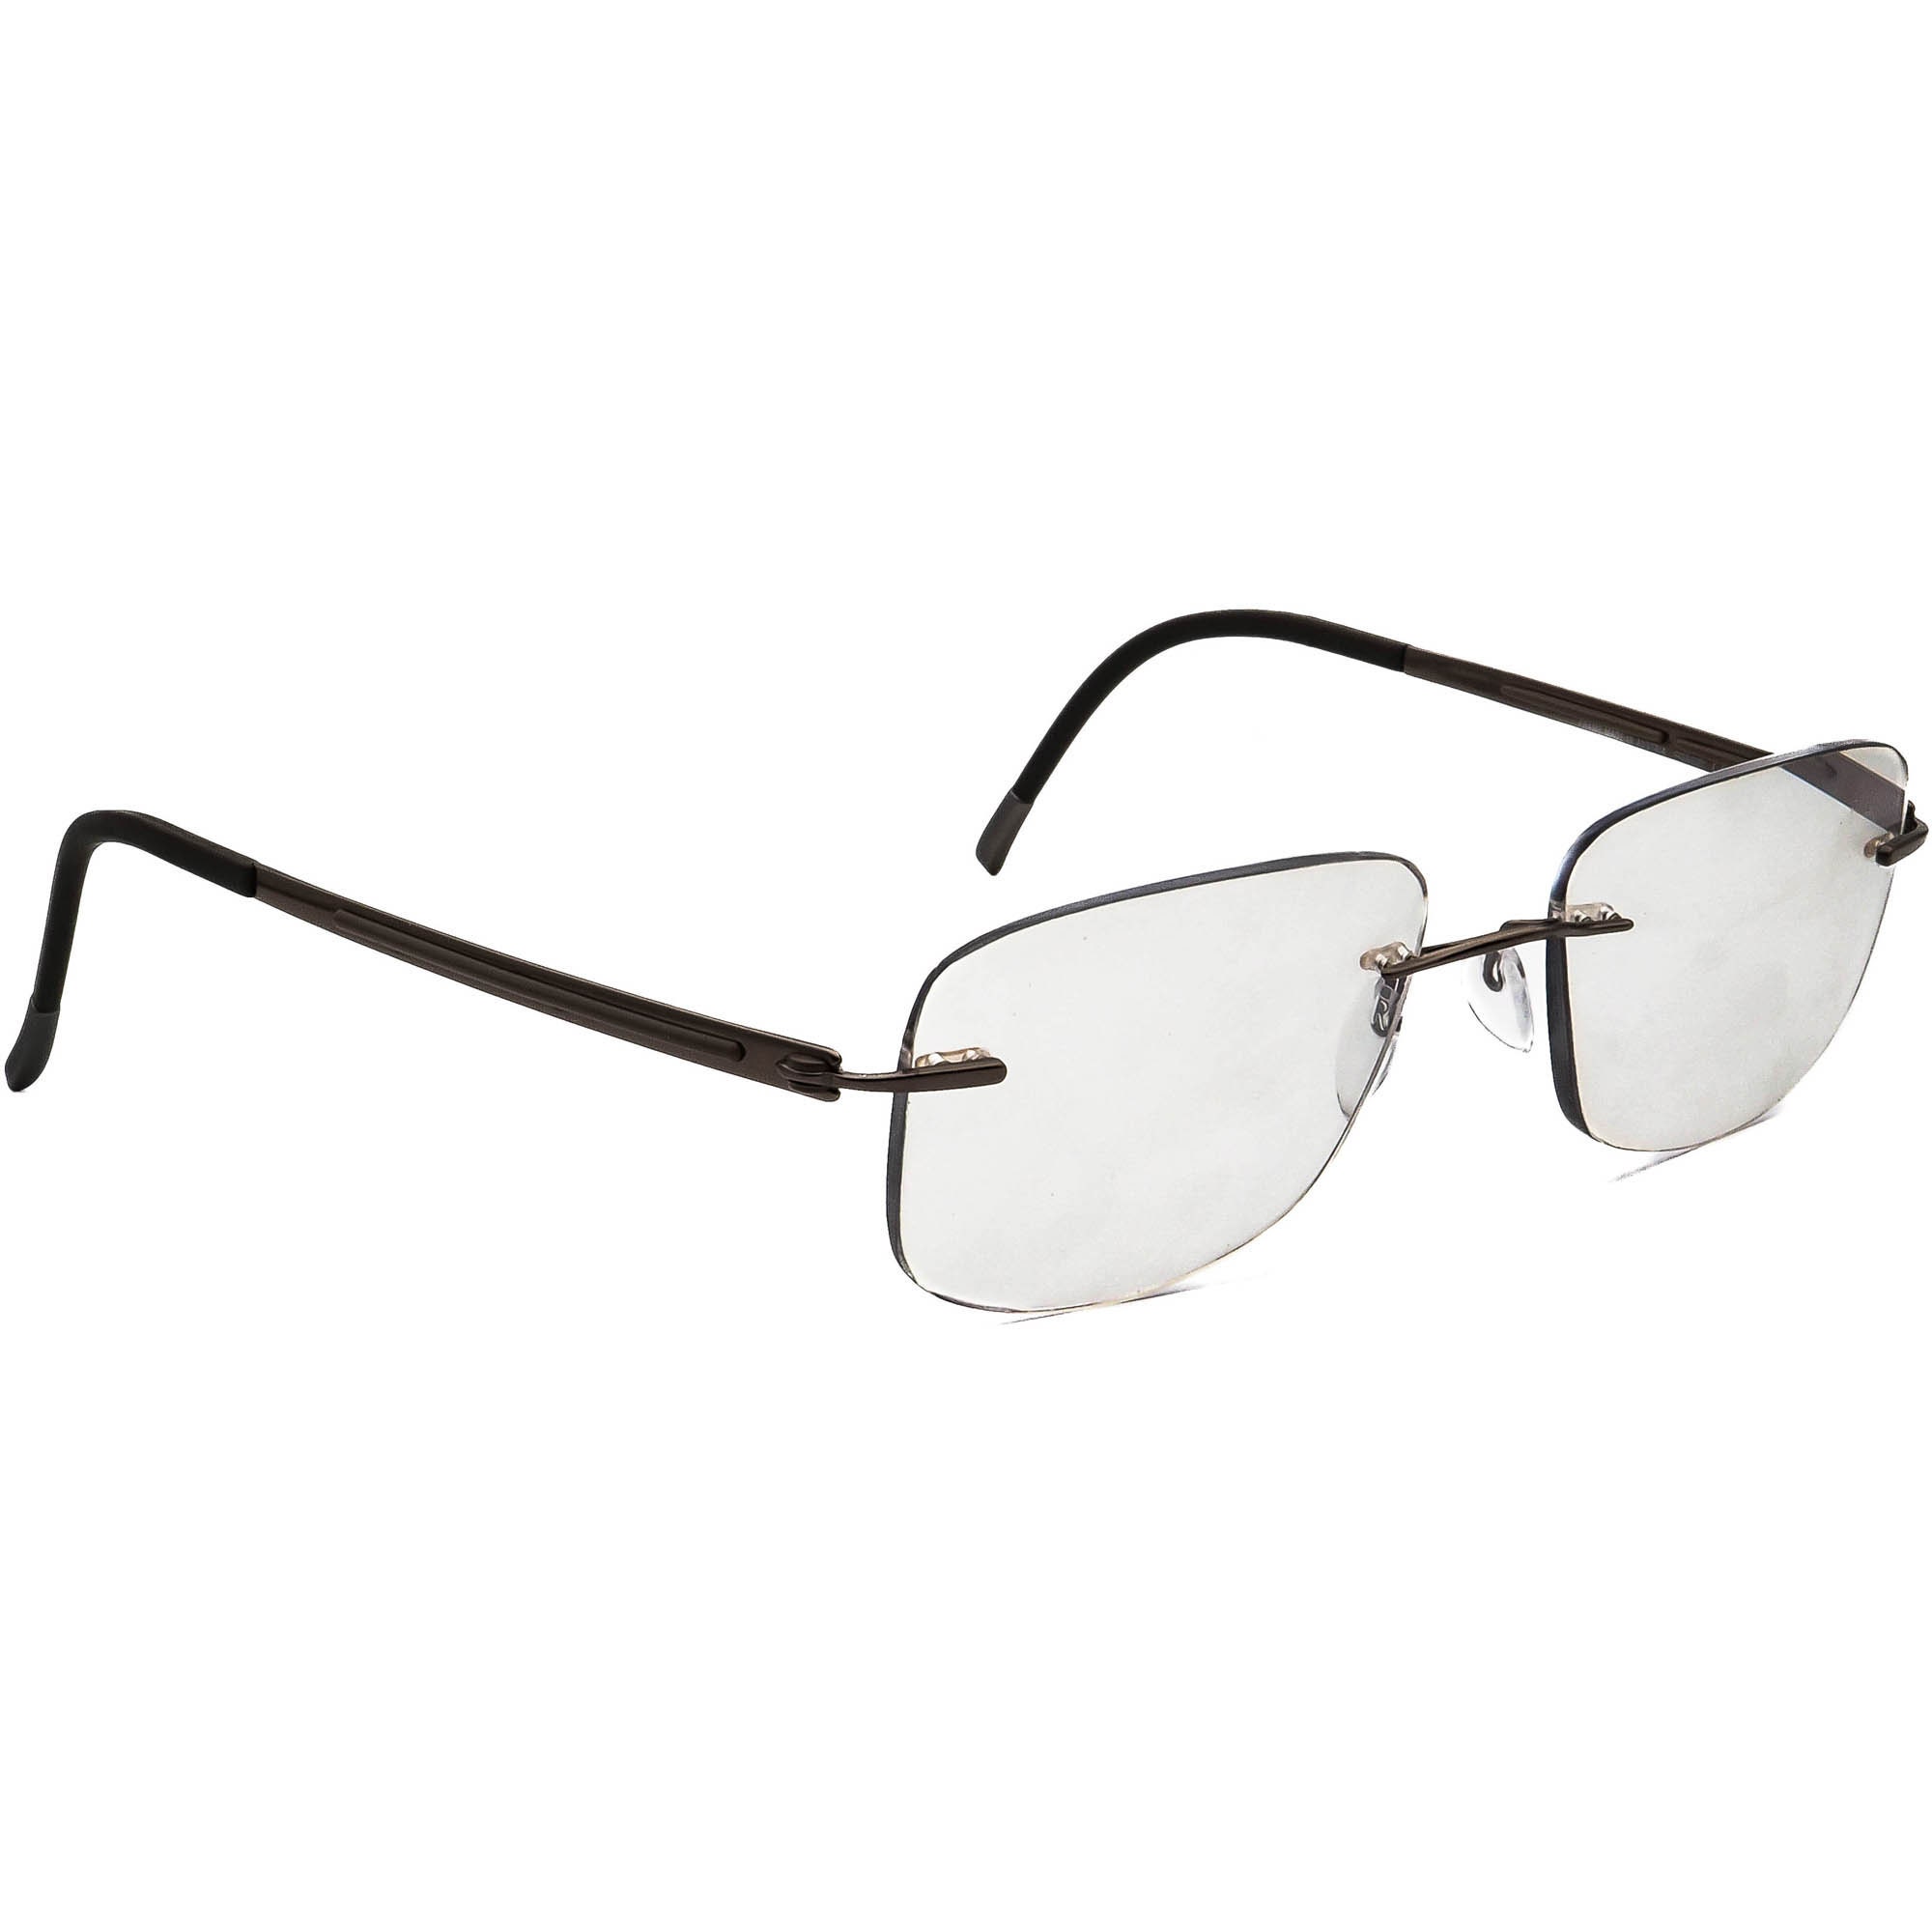 Silhouette Eyeglasses 5263 40 6055 Titan Brown Rimless Frame - Etsy Sweden